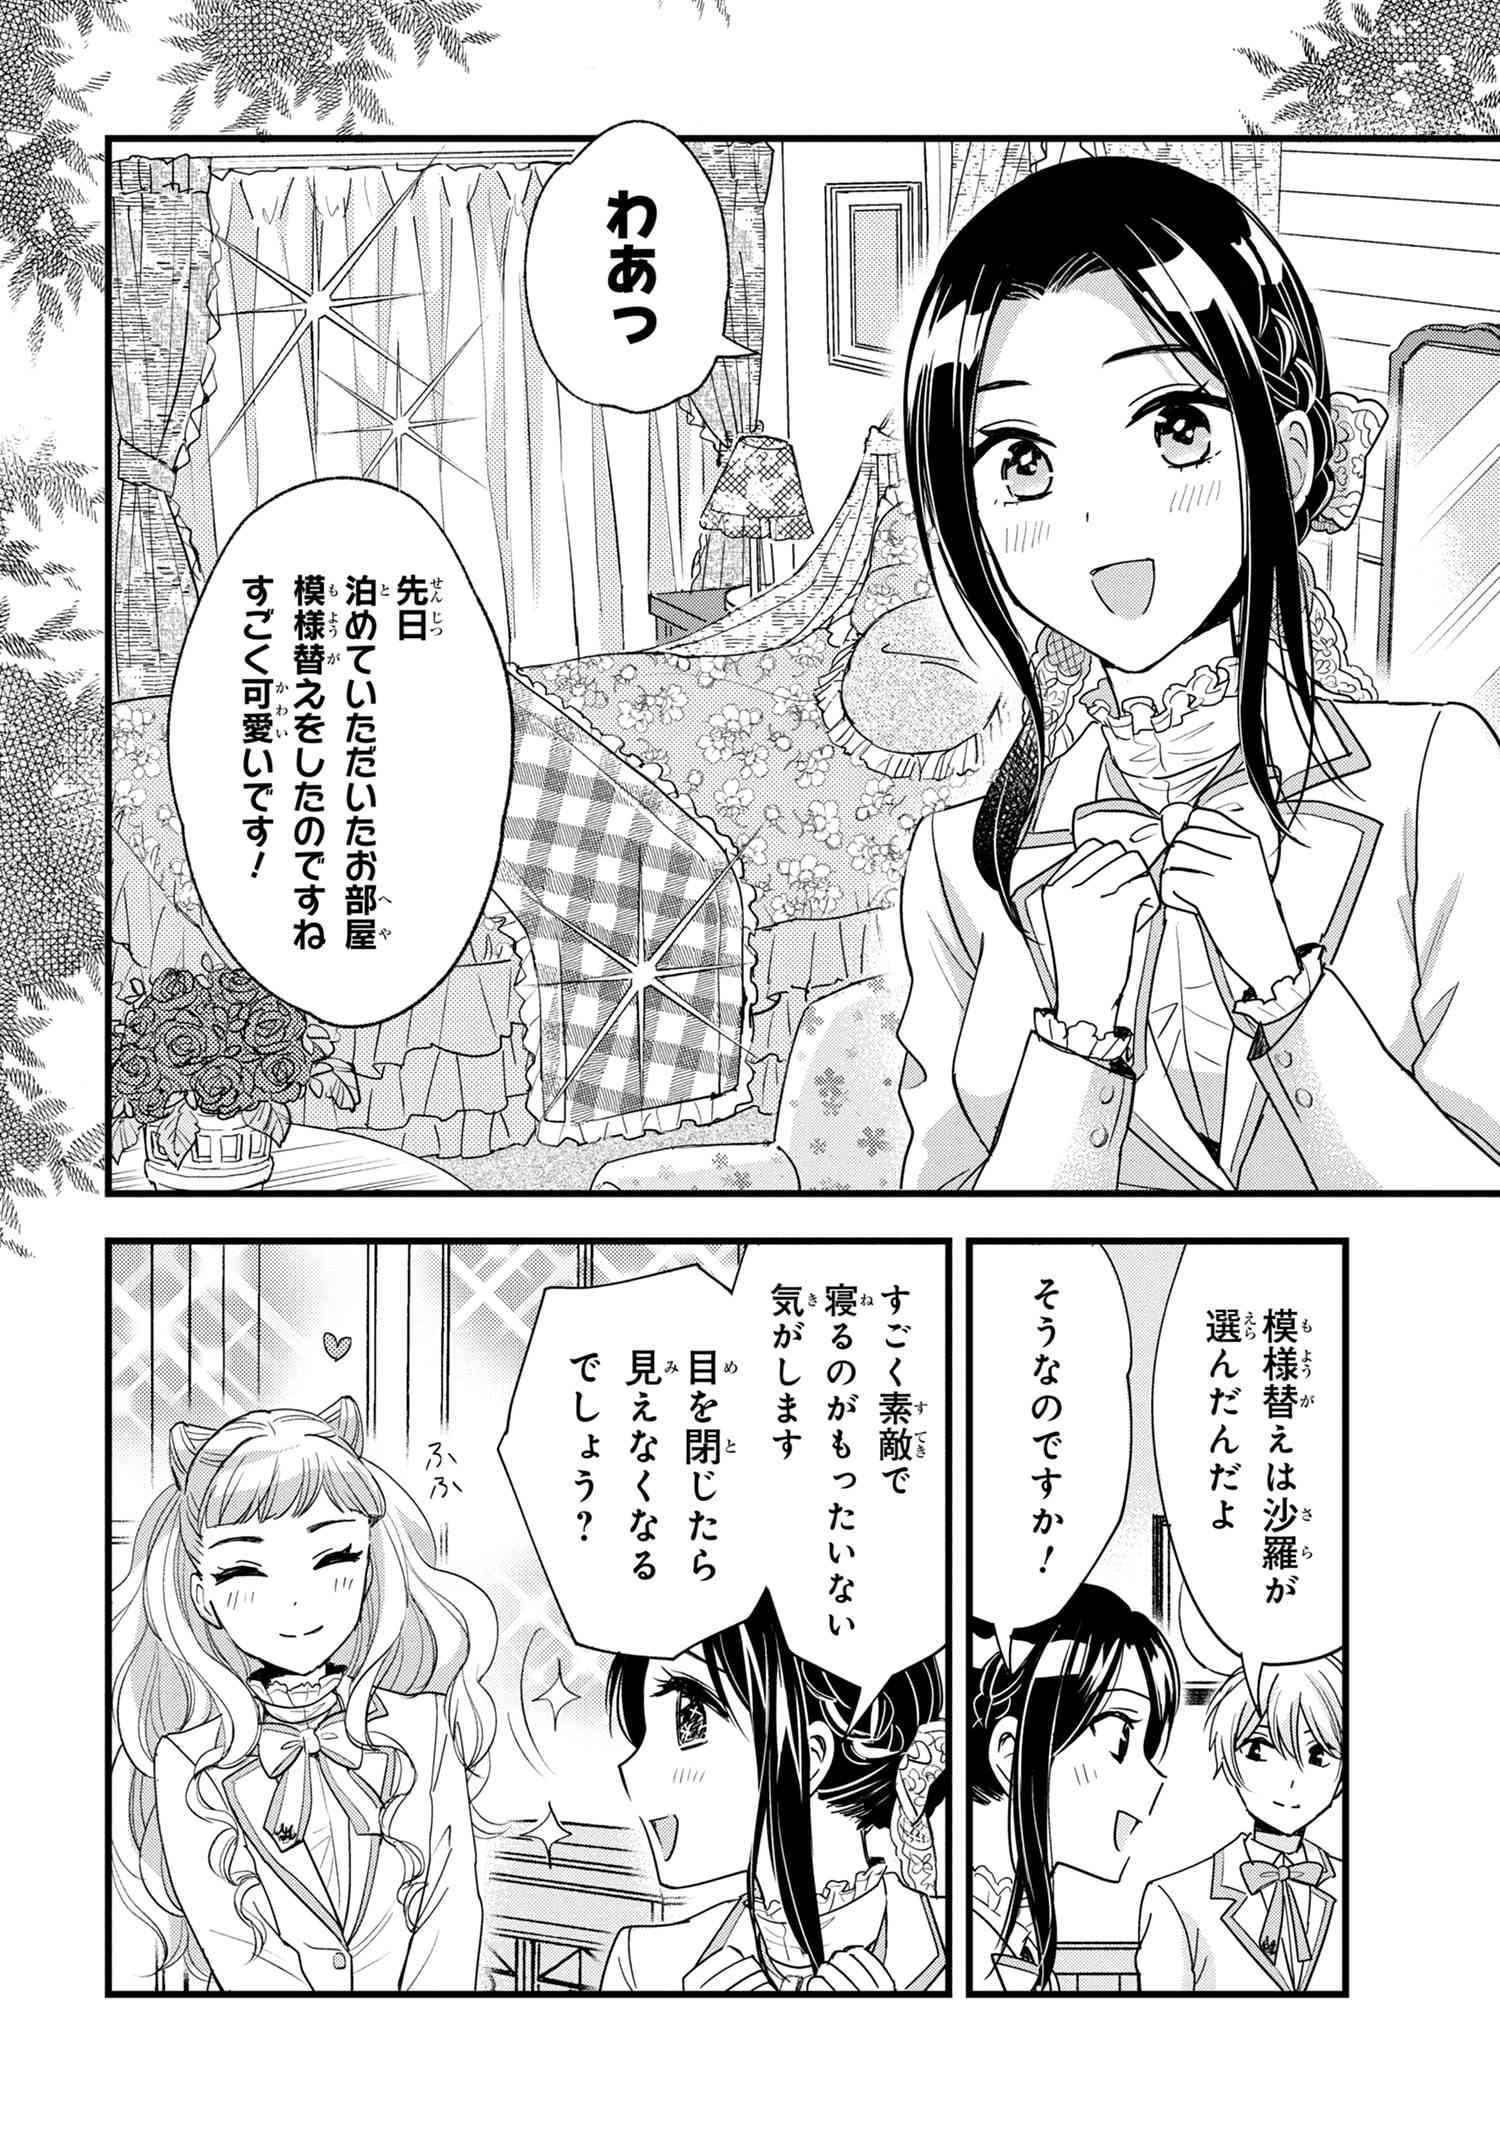 Reiko no Fuugi Akuyaku Reijou to Yobarete imasu ga, tada no Binbou Musume desu - Chapter 13-4 - Page 1